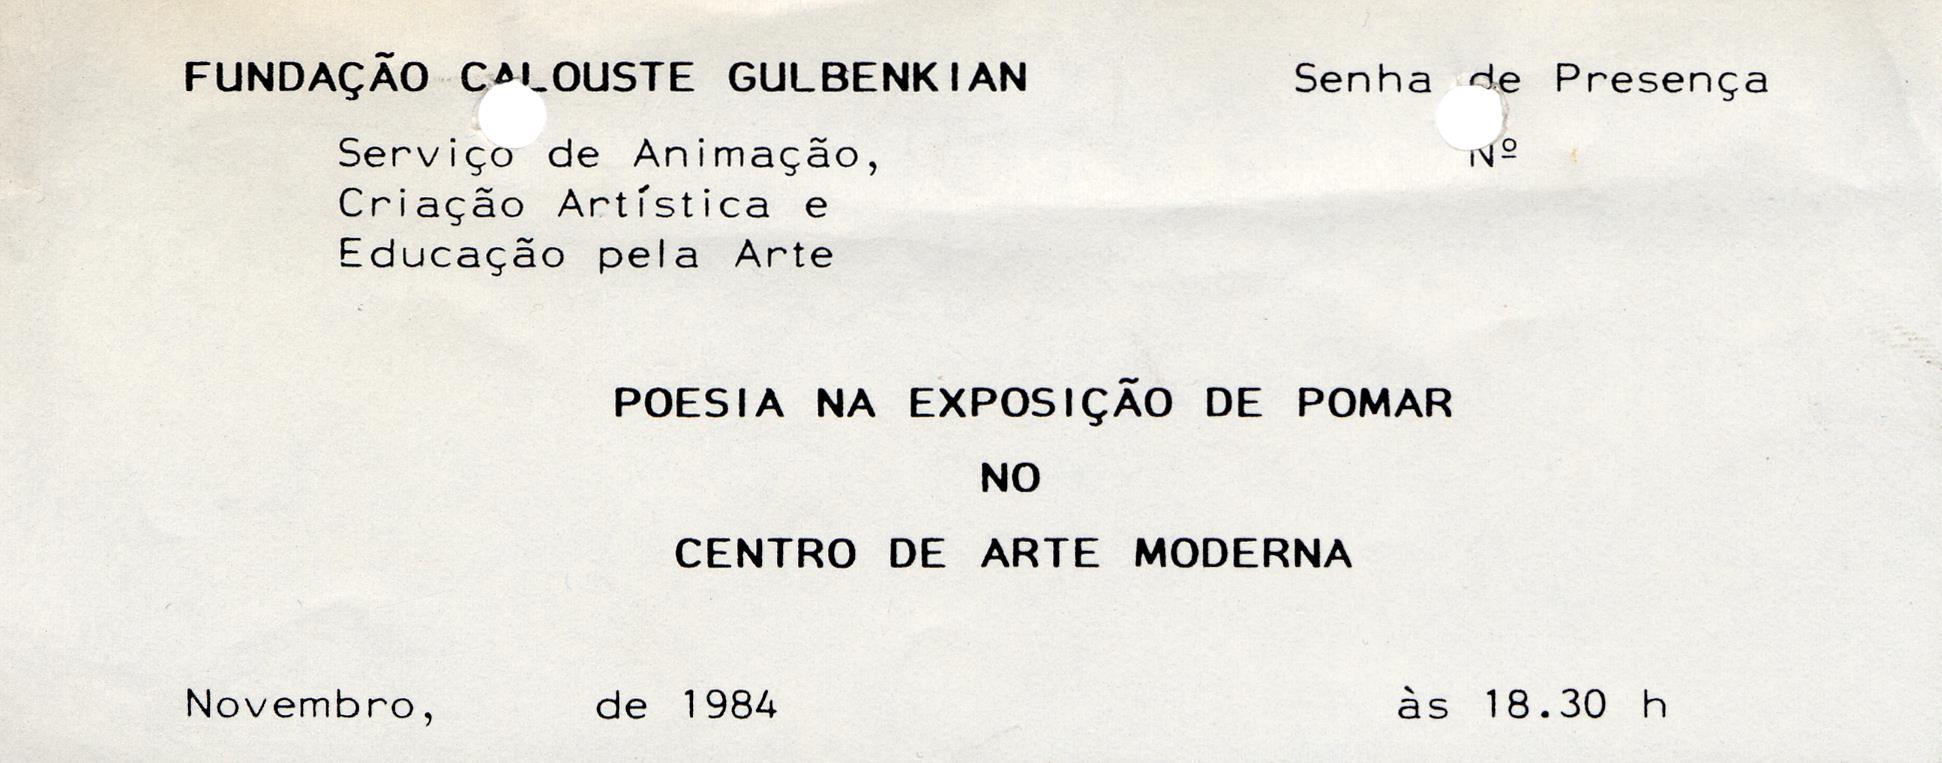 Serviço ACARTE / Fundação Calouste Gulbenkian